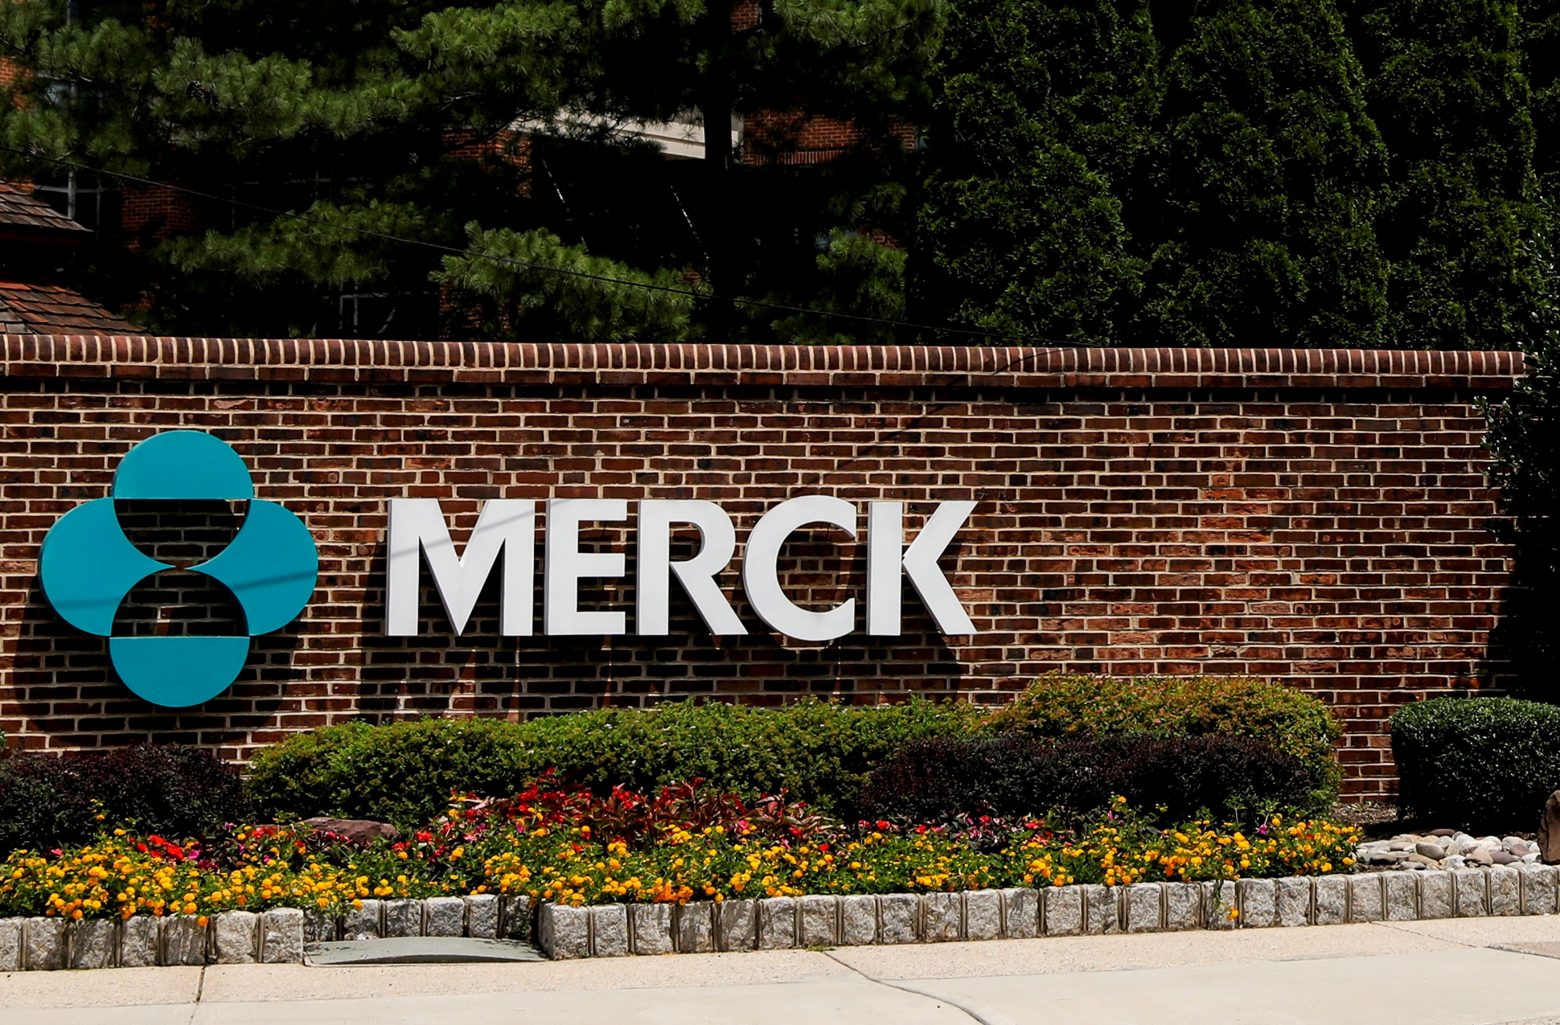 Κοροναϊός - Επείγουσα έγκριση για το πρώτο αντι-ιικό χάπι ζητά η Merck στις ΗΠΑ